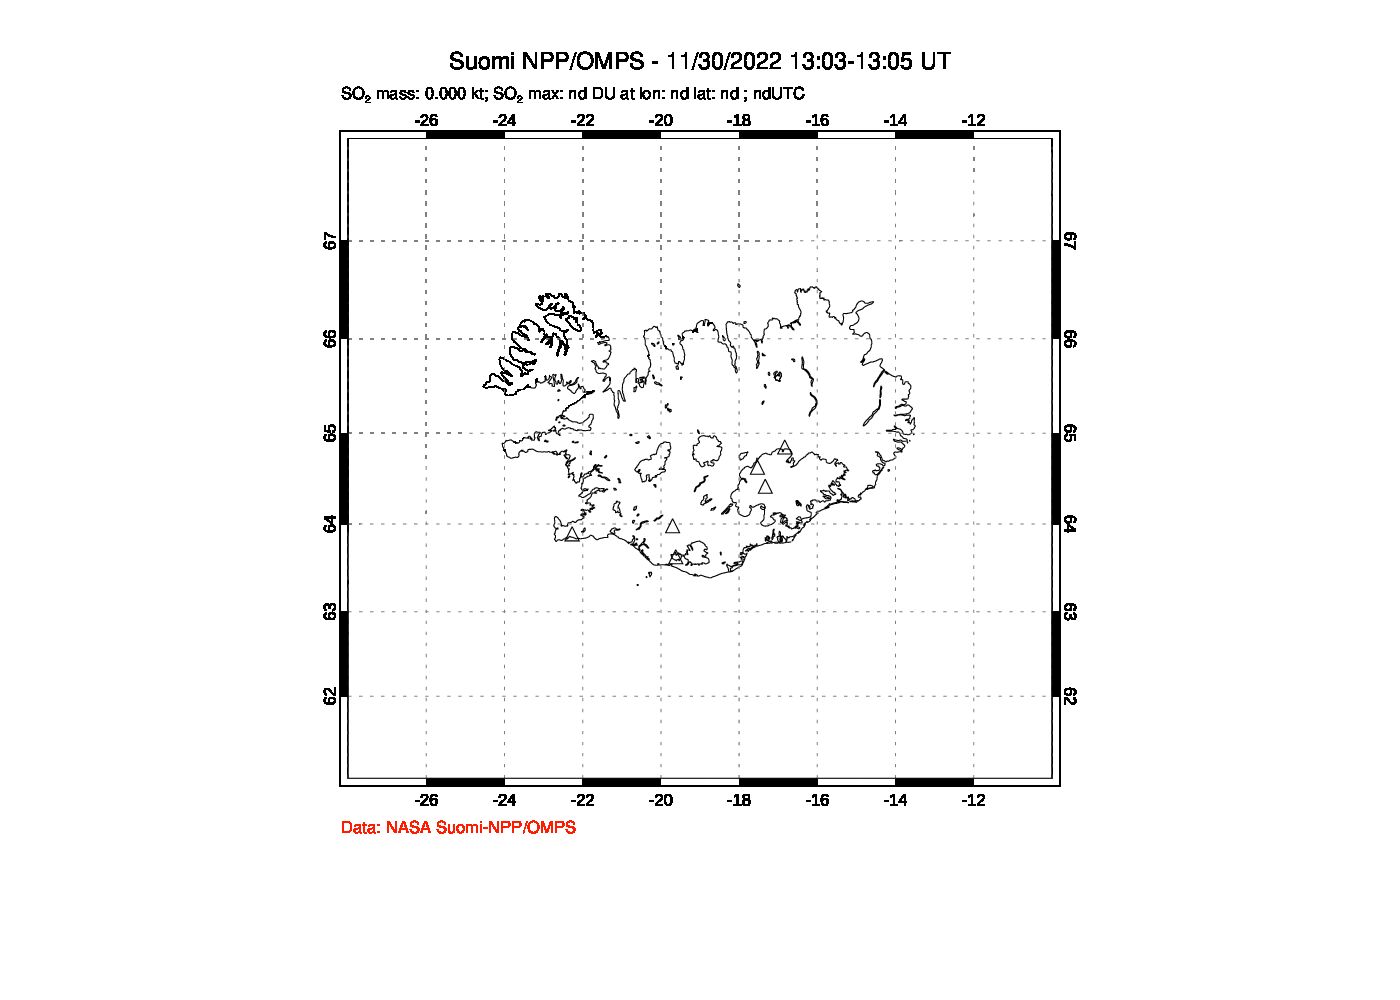 A sulfur dioxide image over Iceland on Nov 30, 2022.